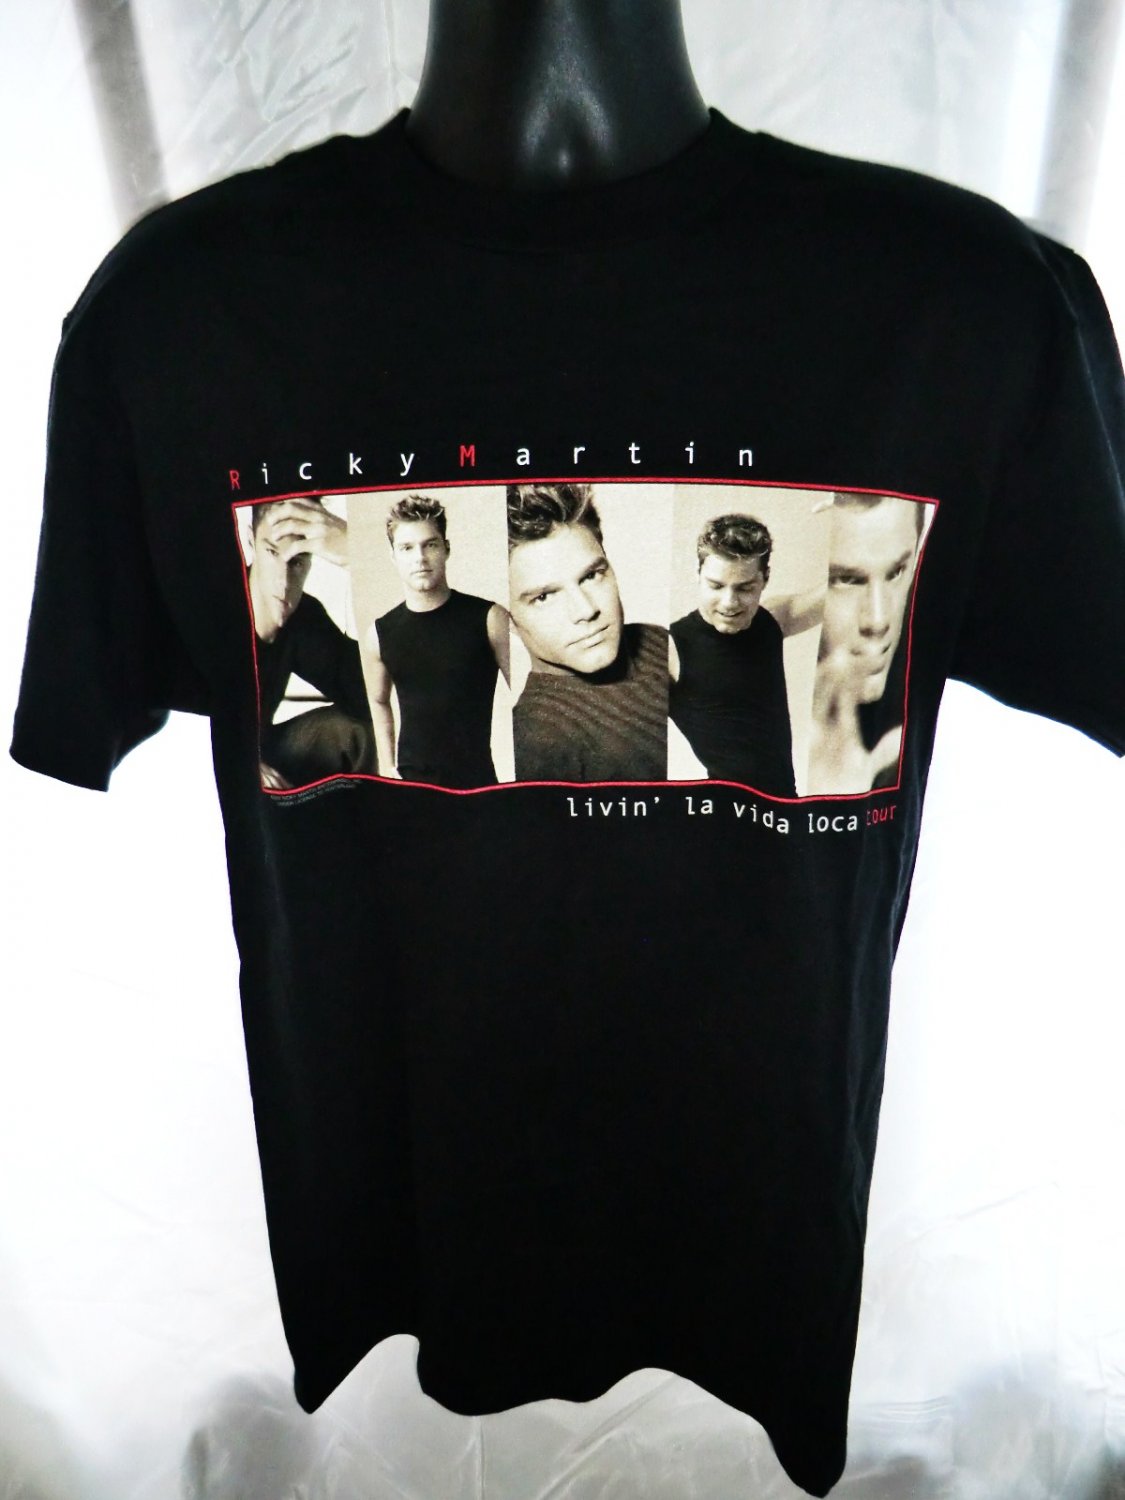 1999 tour shirt